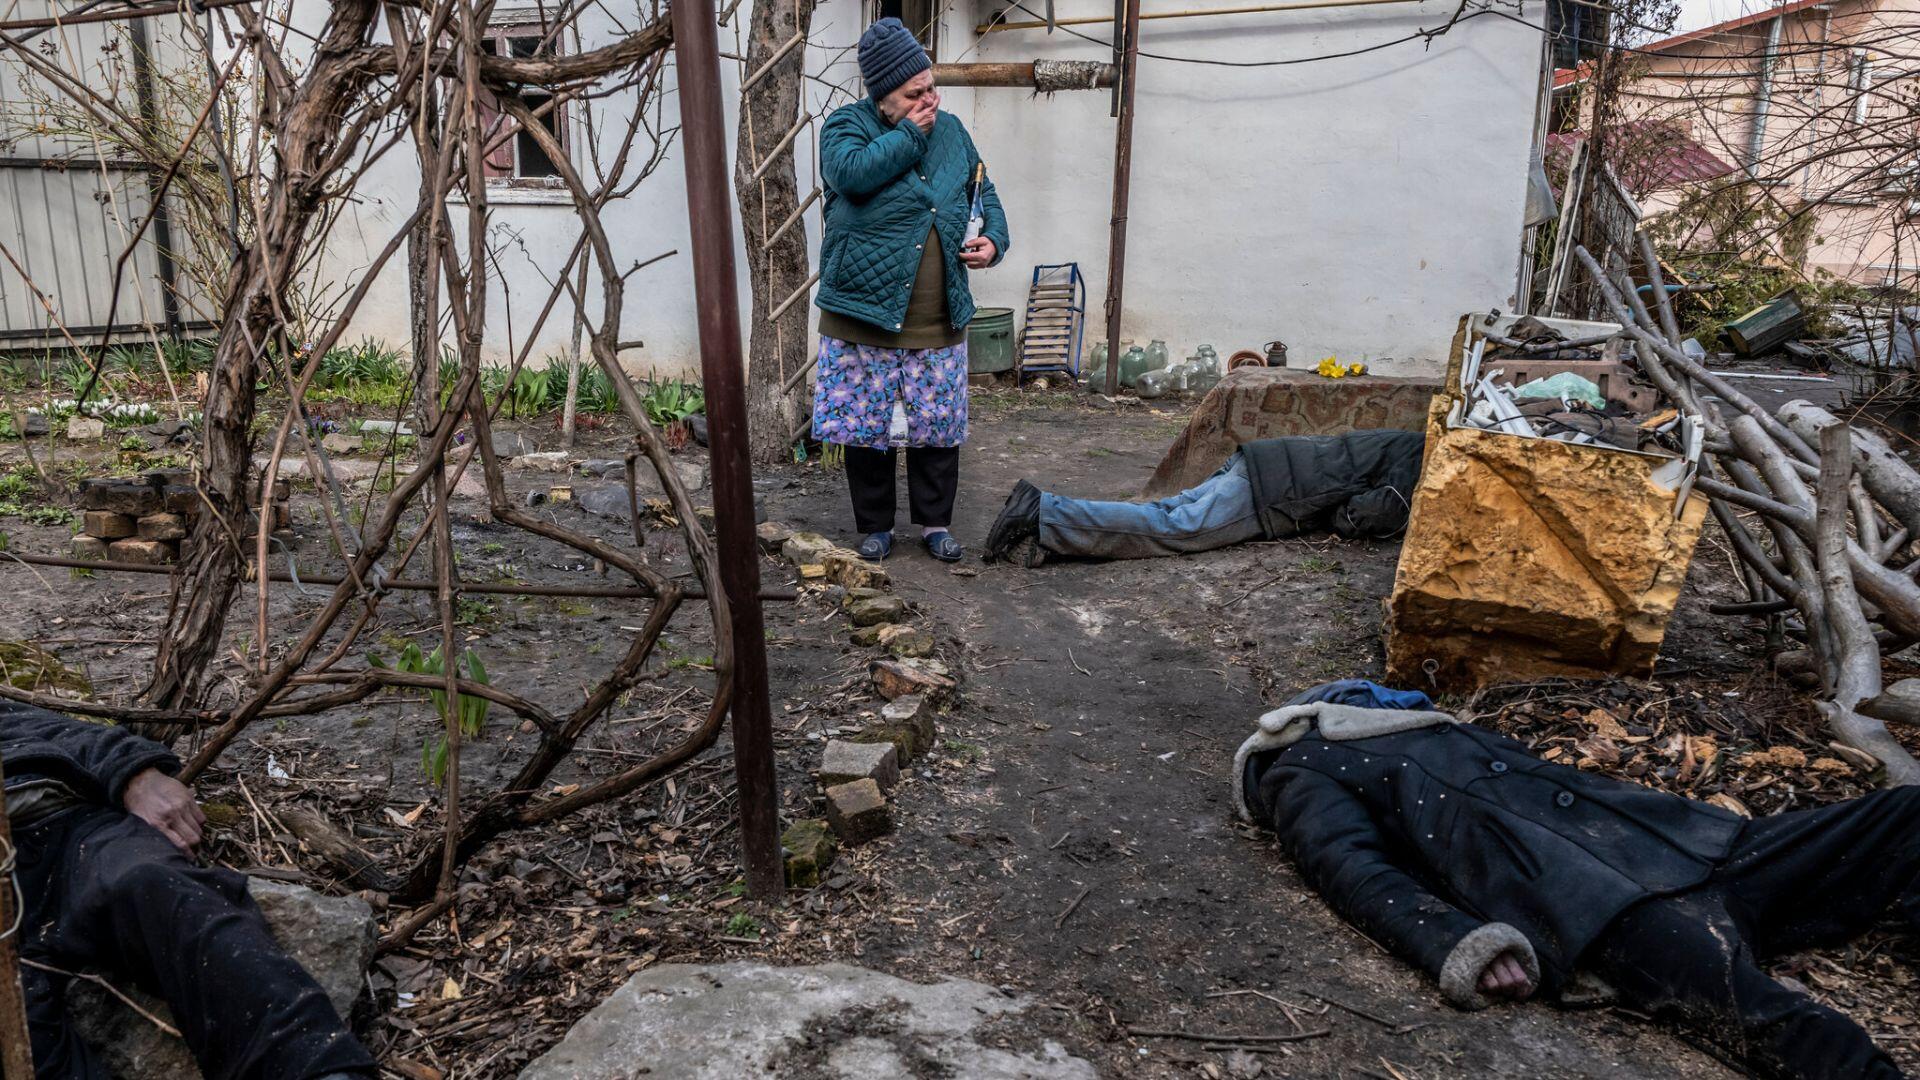 bestialstwa w ukrainie maja korzenie gleboko w rosyjskim wojsku